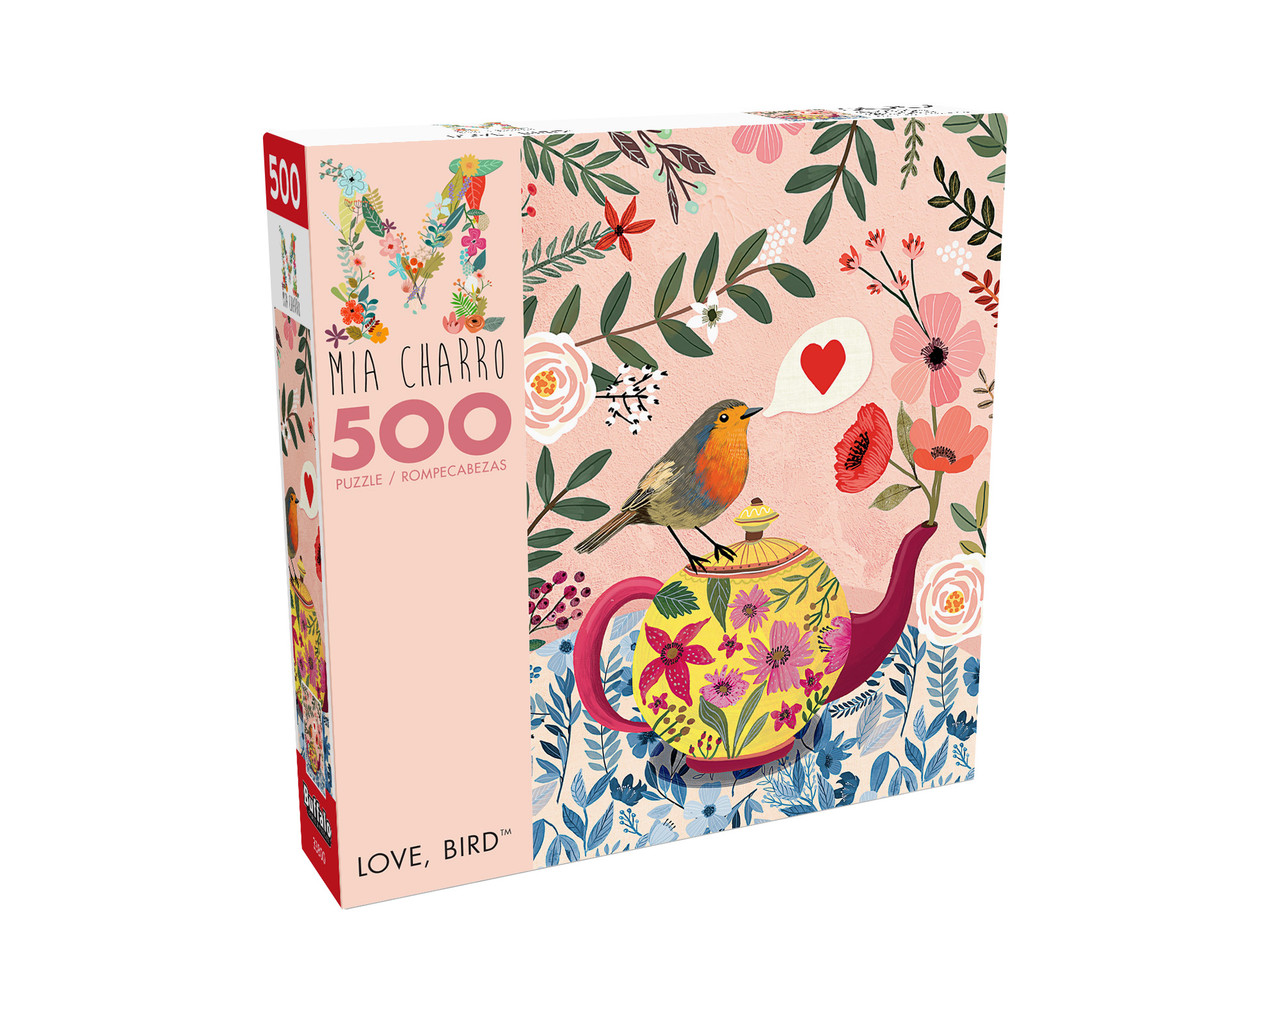 Mia Charro: Love, Bird 500 Piece Puzzle